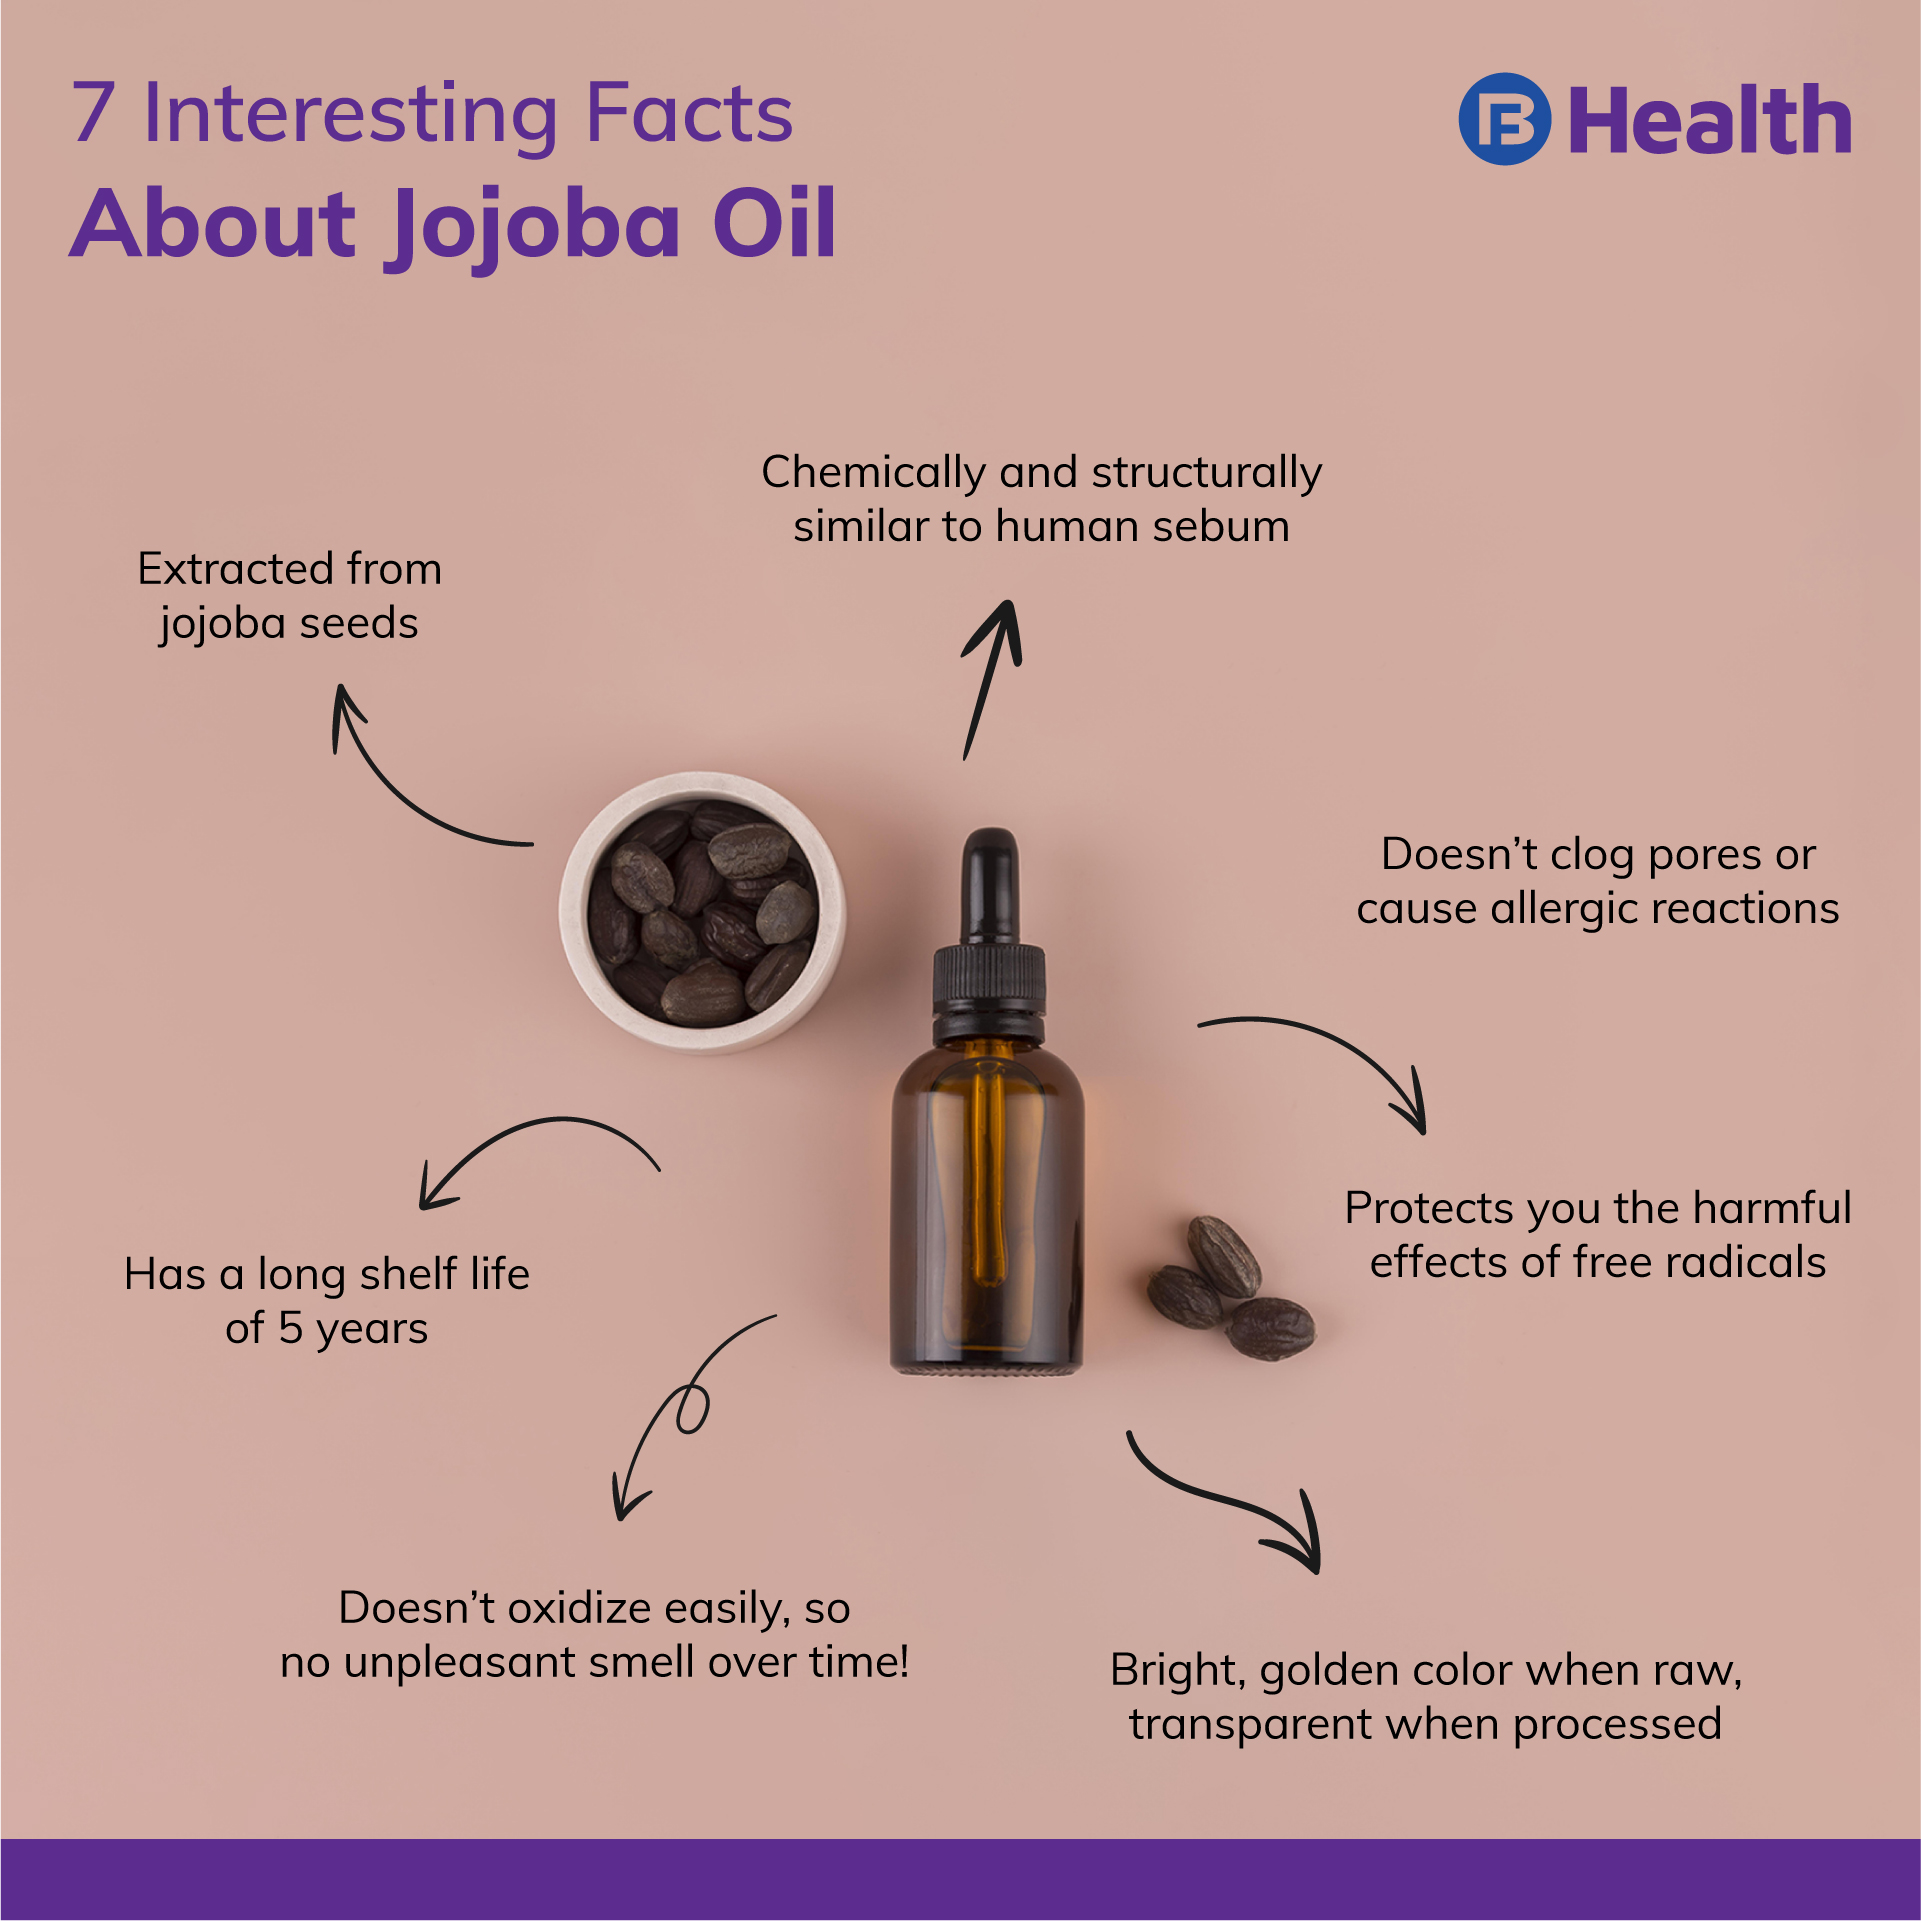 Jojoba Oil Benefits for Hair